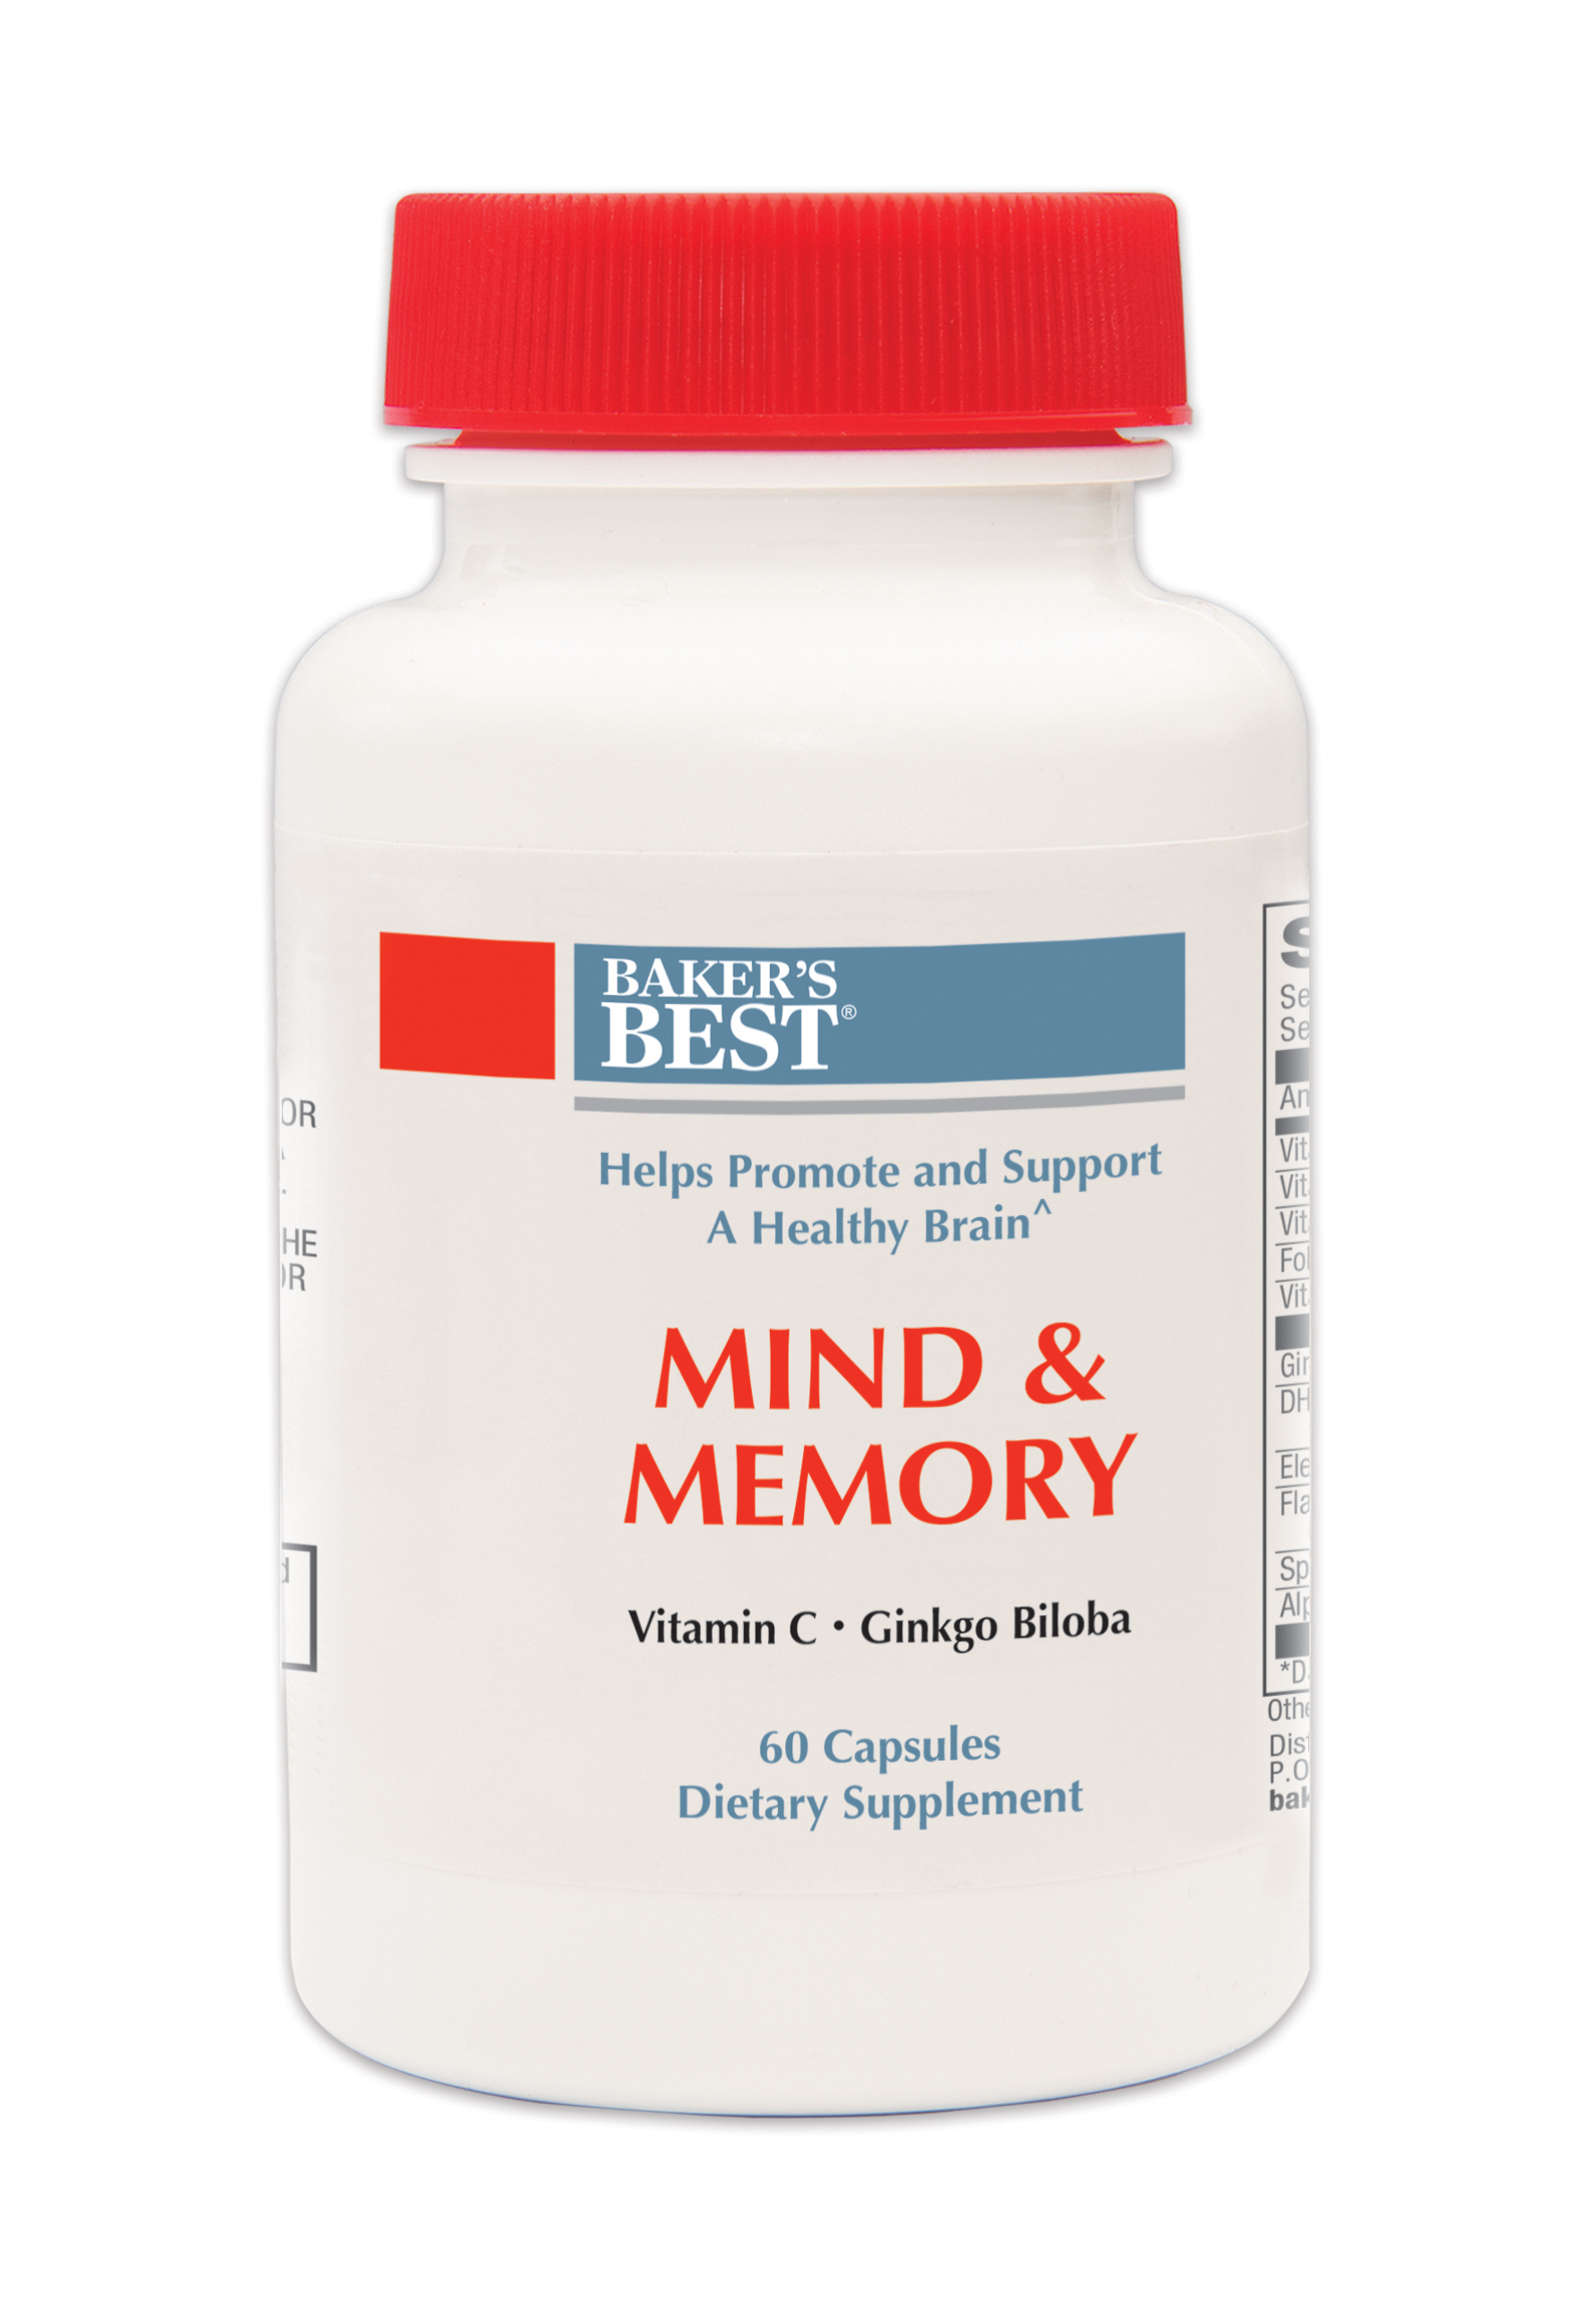 Maximum Mind & Memory Formula